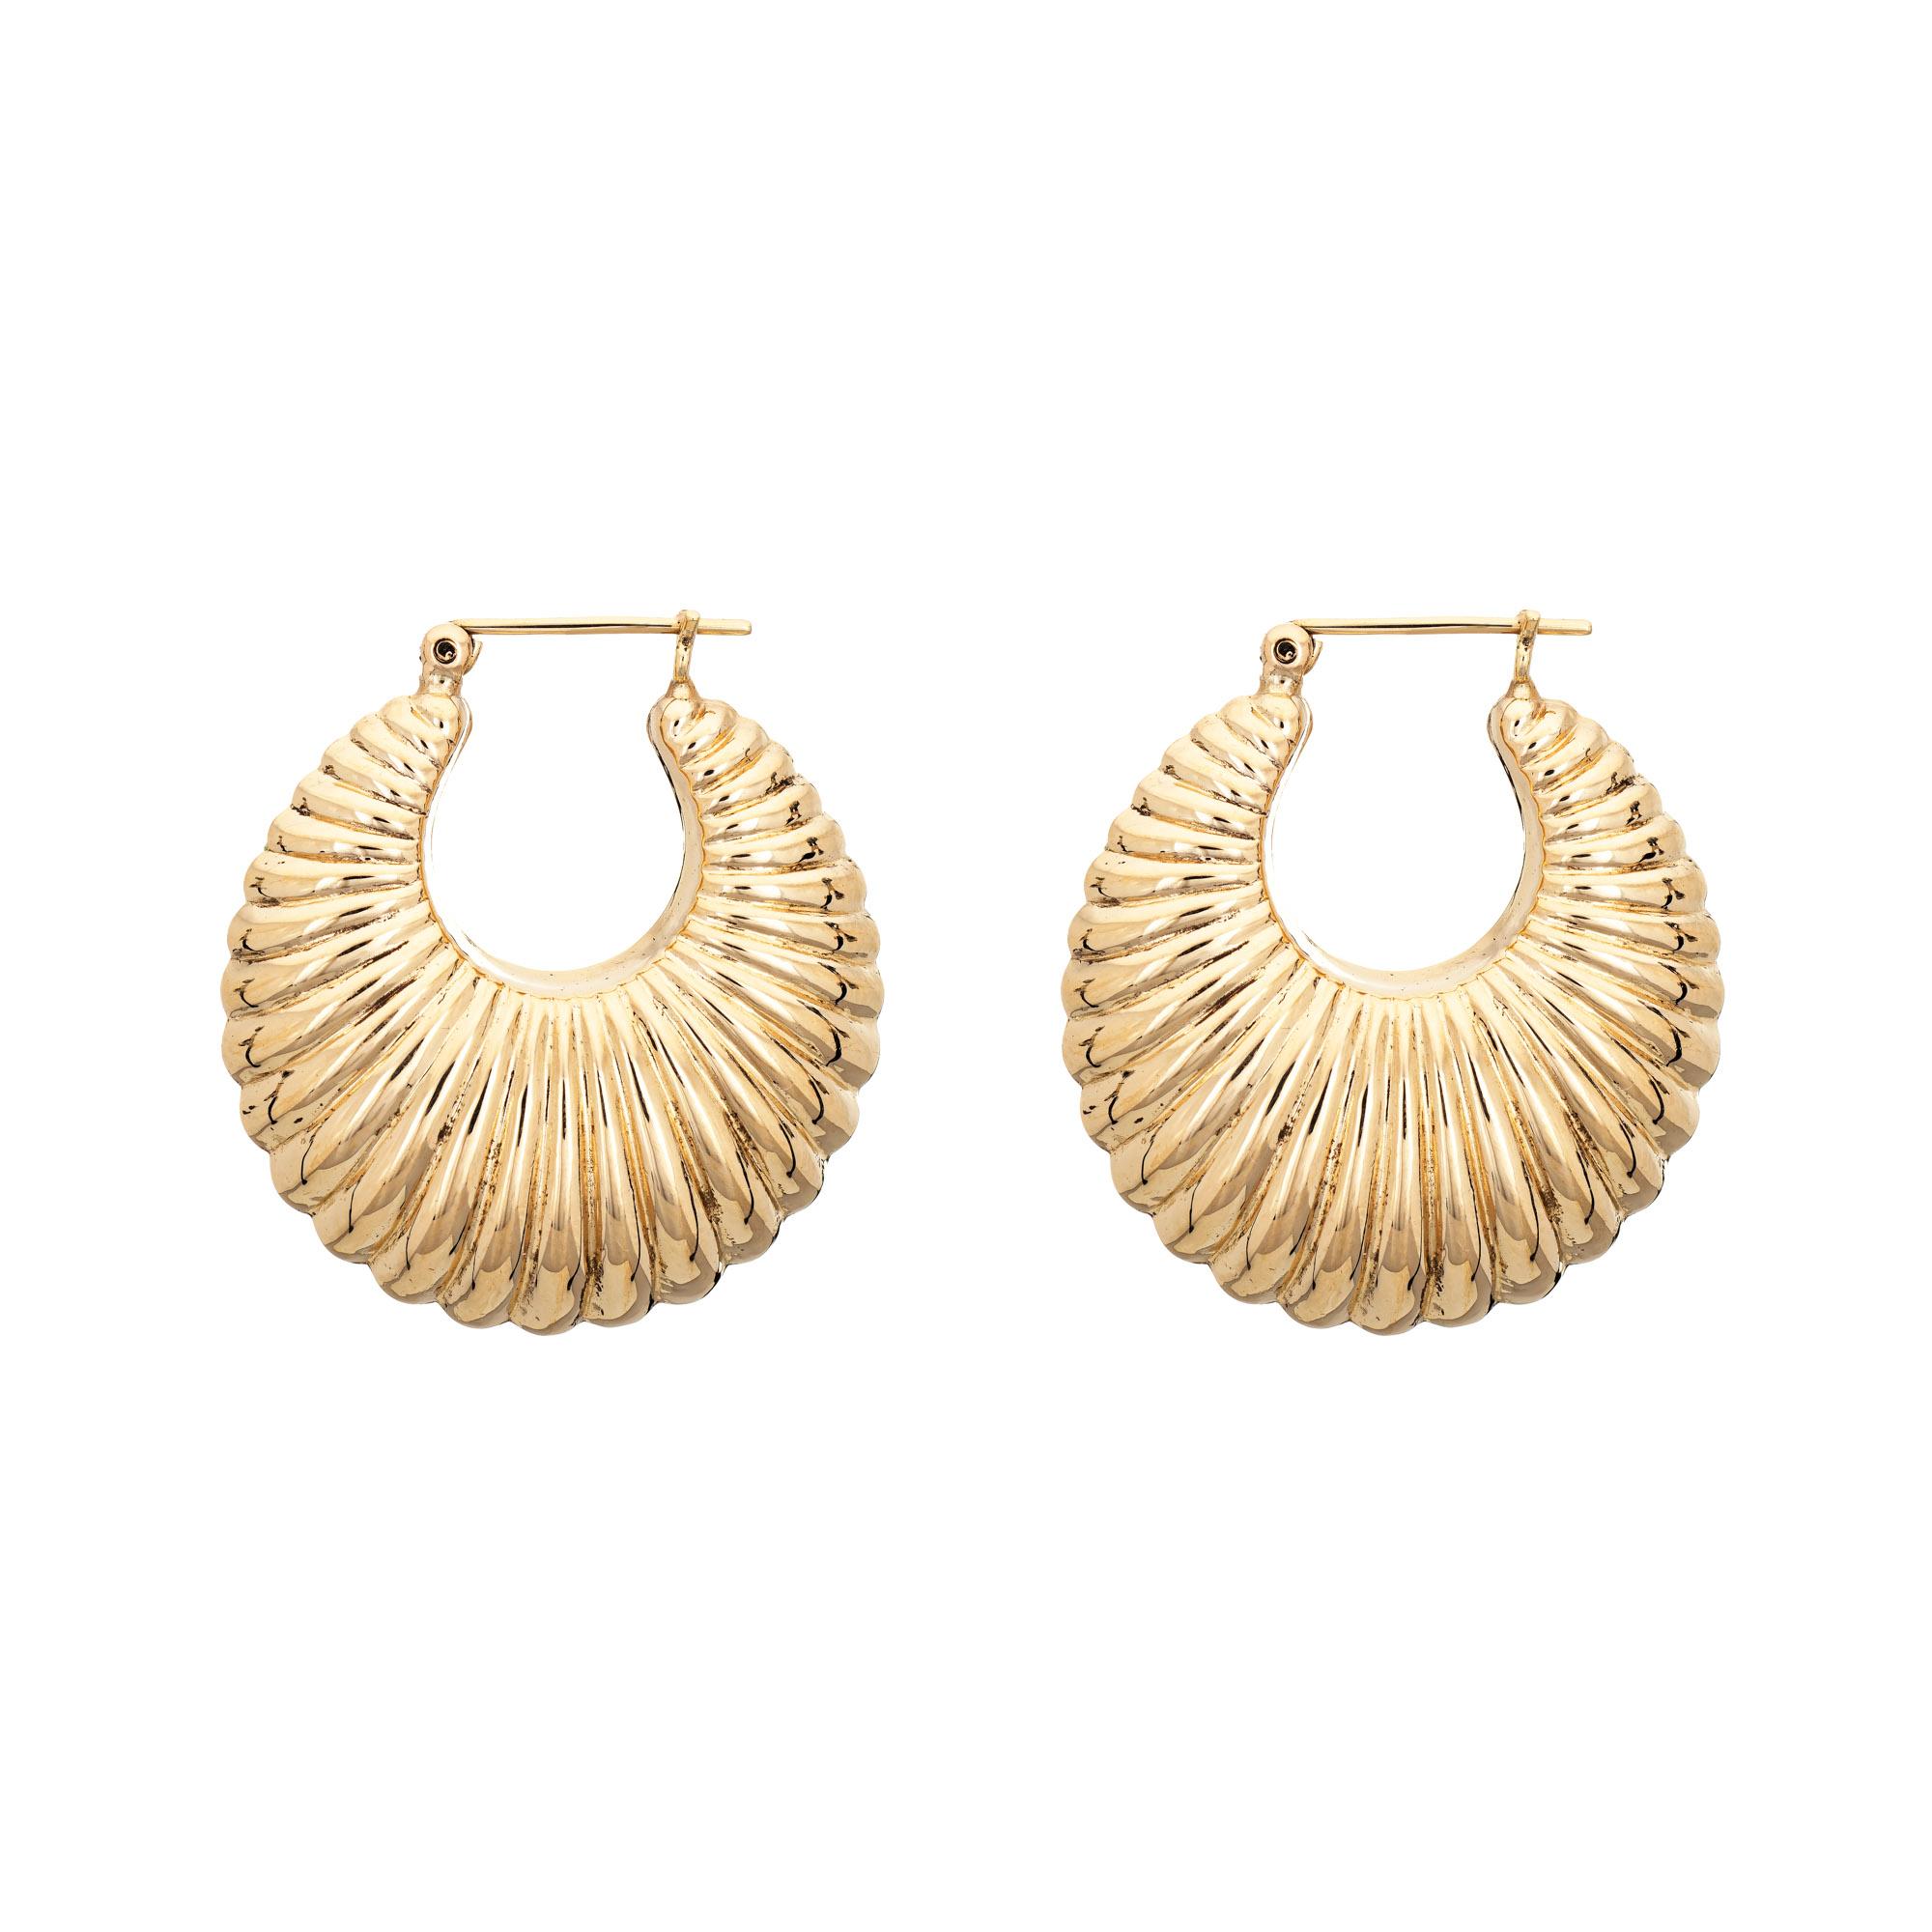 Modern Mid Sized Hoop Earrings Vintage 14 Karat Gold Puffed Shell Design Jewelry